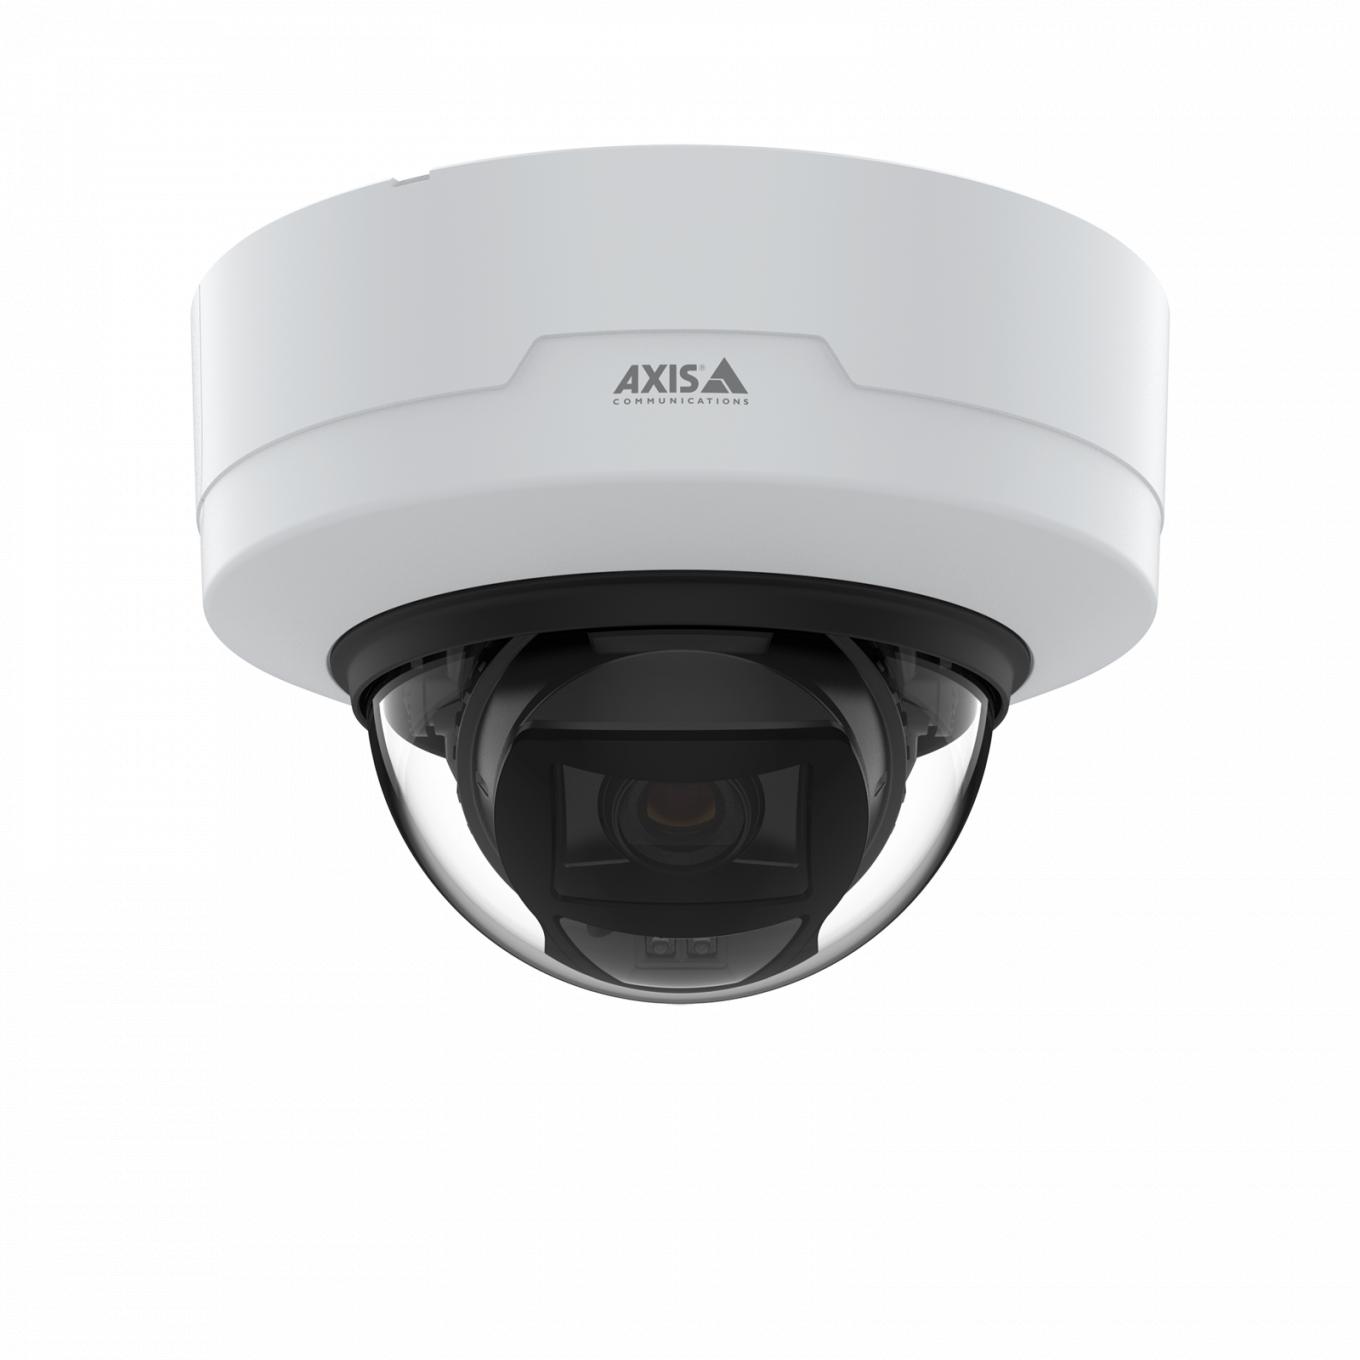 AXIS P3265-LV Dome Camera zamontowana na suficie, widok z przodu